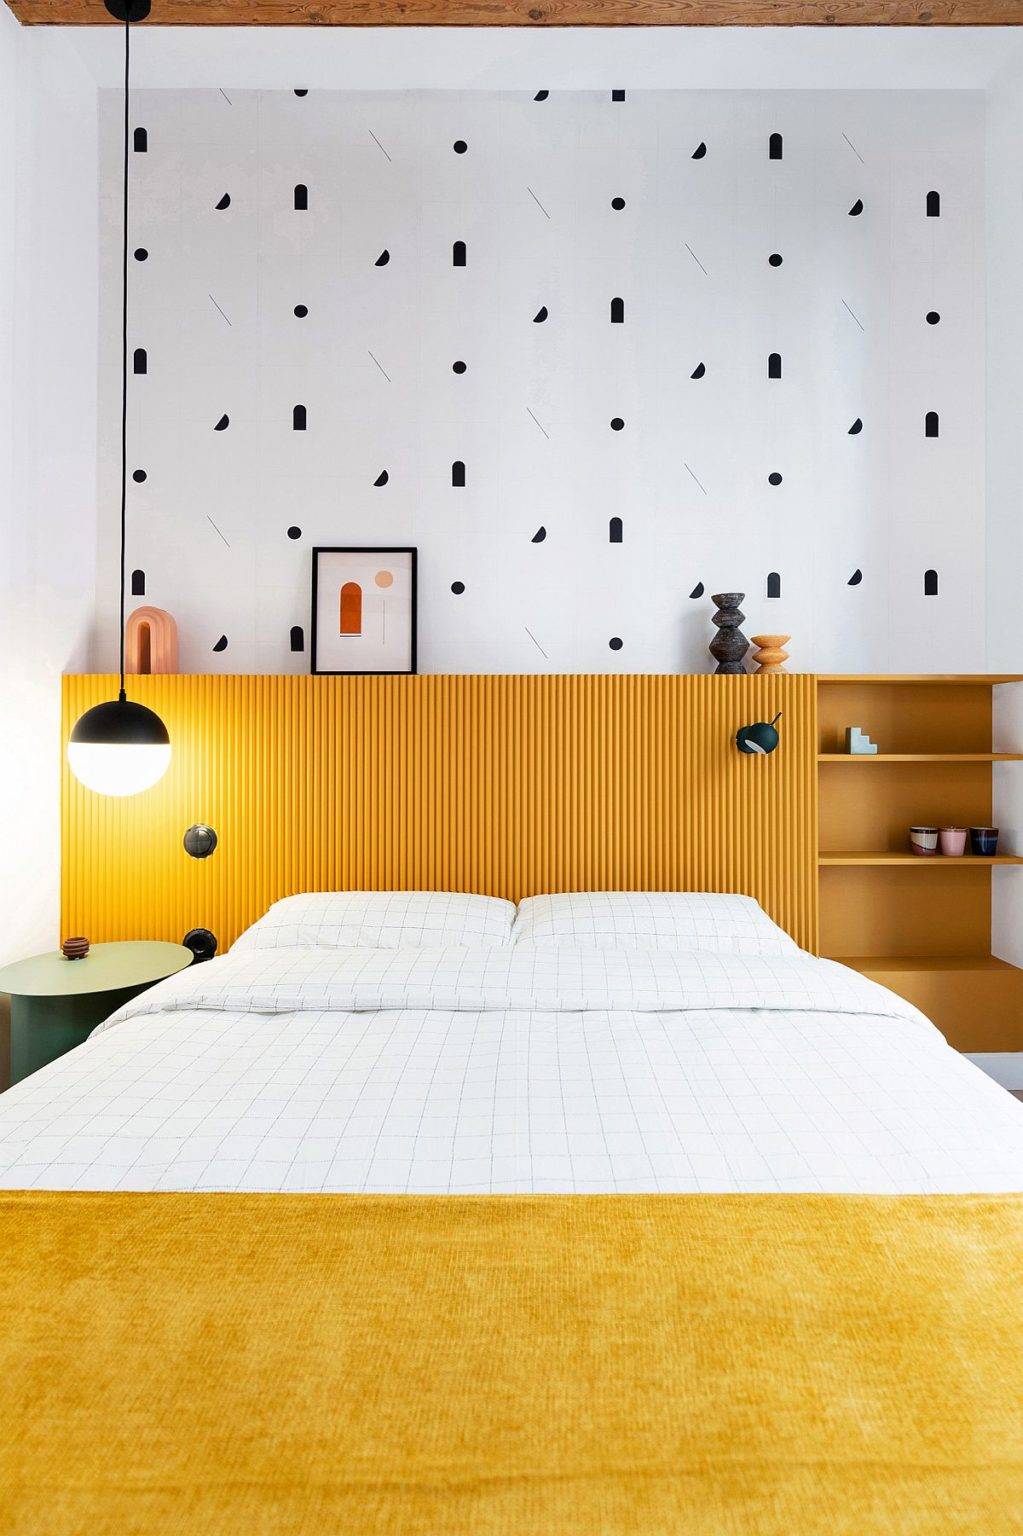 Phòng ngủ phong cách Bắc Âu trông thật thời thượng và sành điệu với màu vàng - trắng kết hợp vô cùng ăn ý.